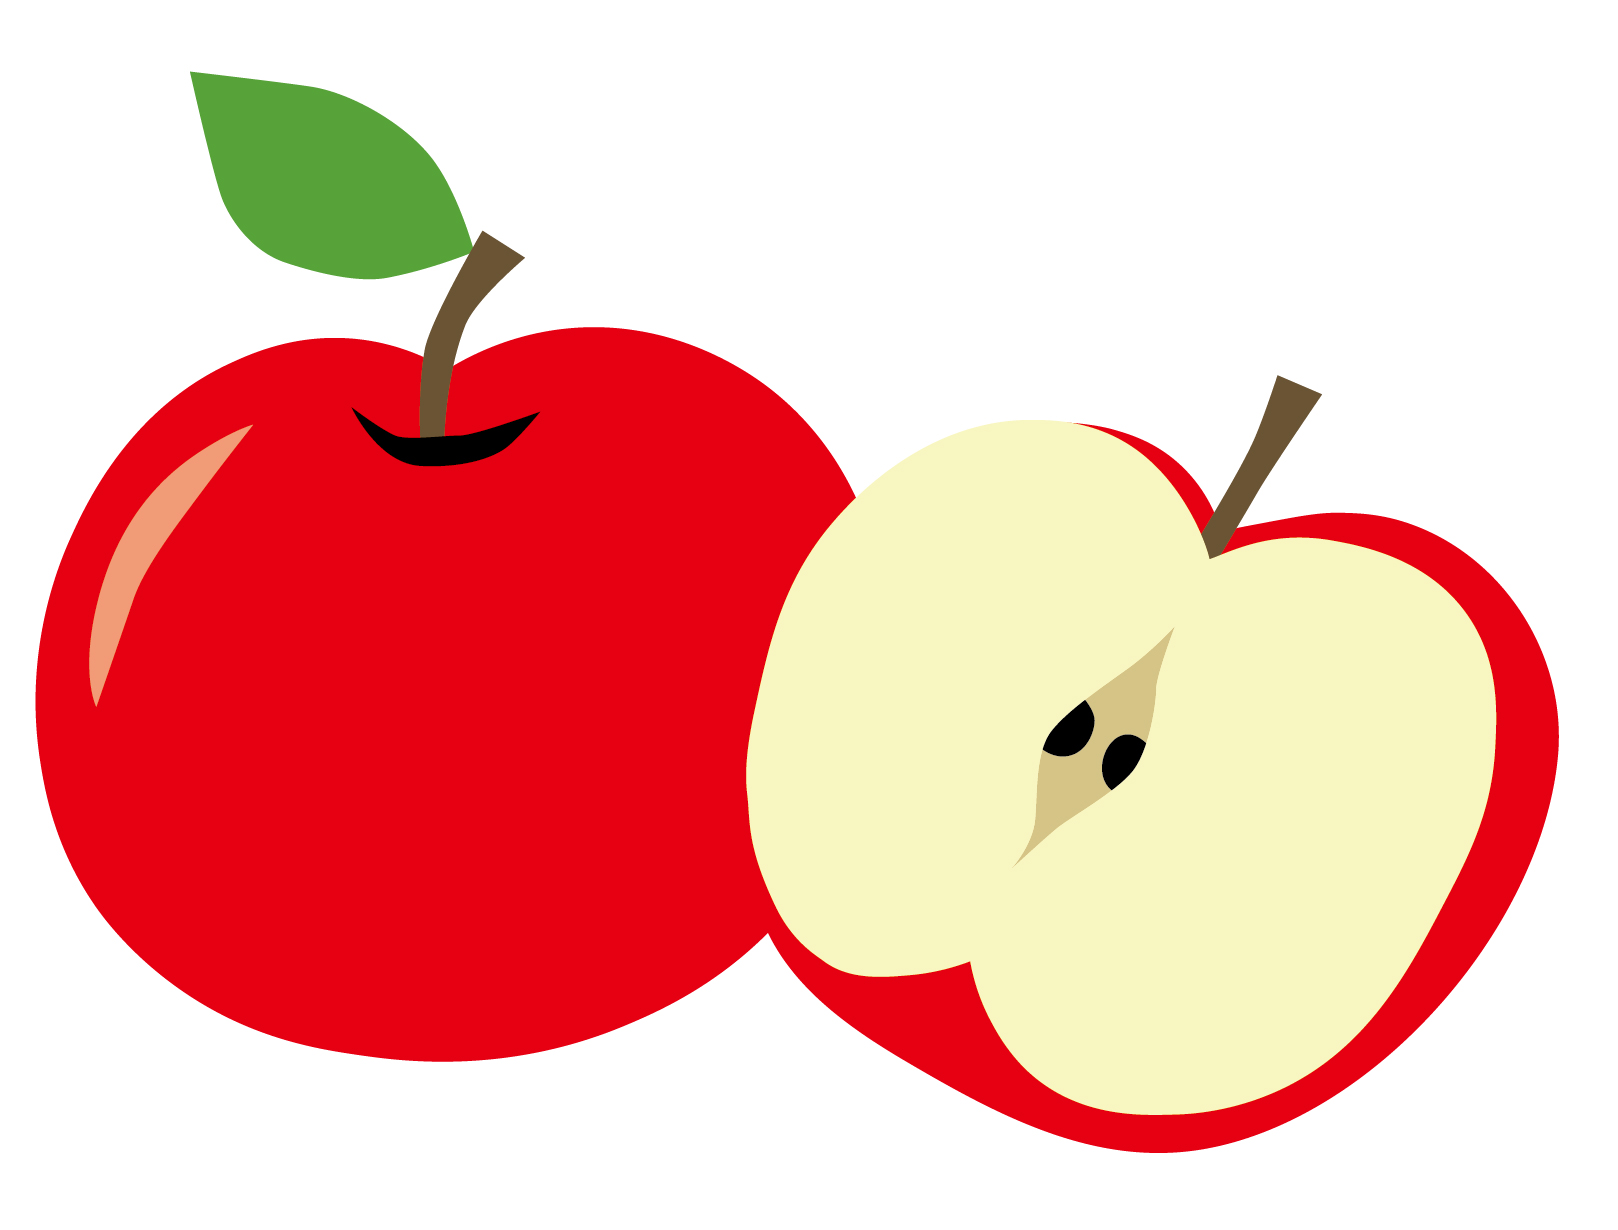 りんご病の症状と予防方法について【伝染性紅斑】